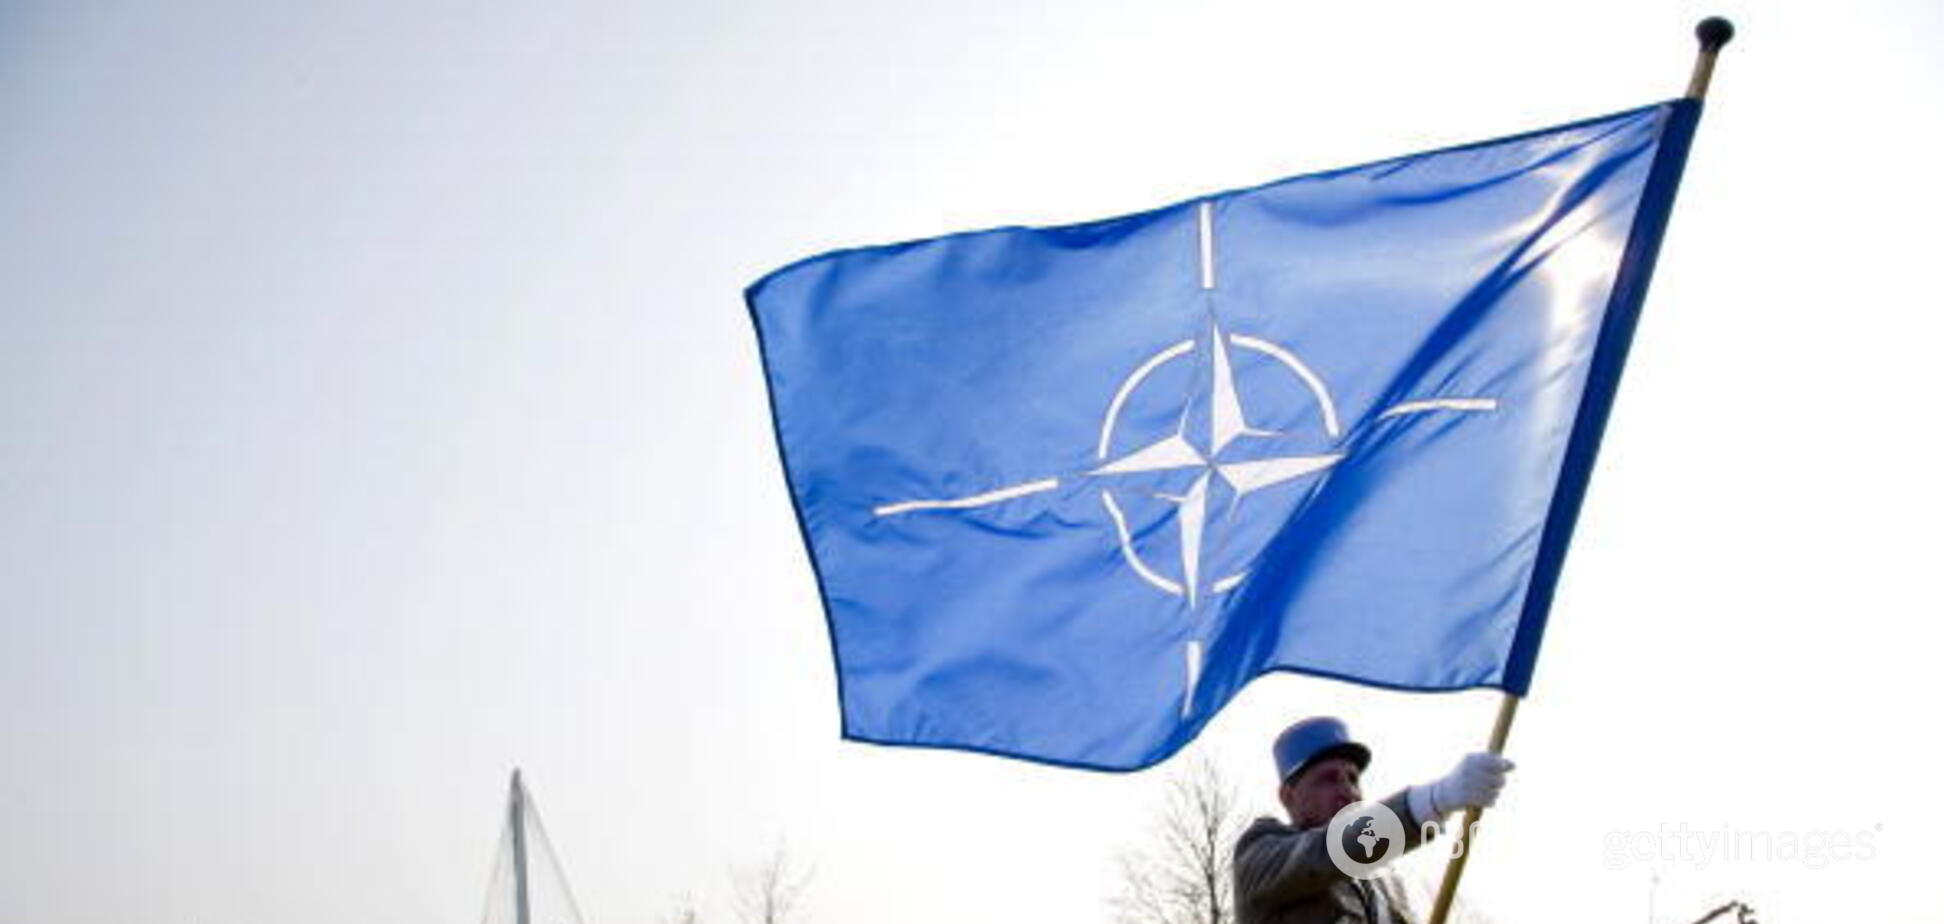 Расслабляться нельзя: названа главная угроза НАТО для Украины